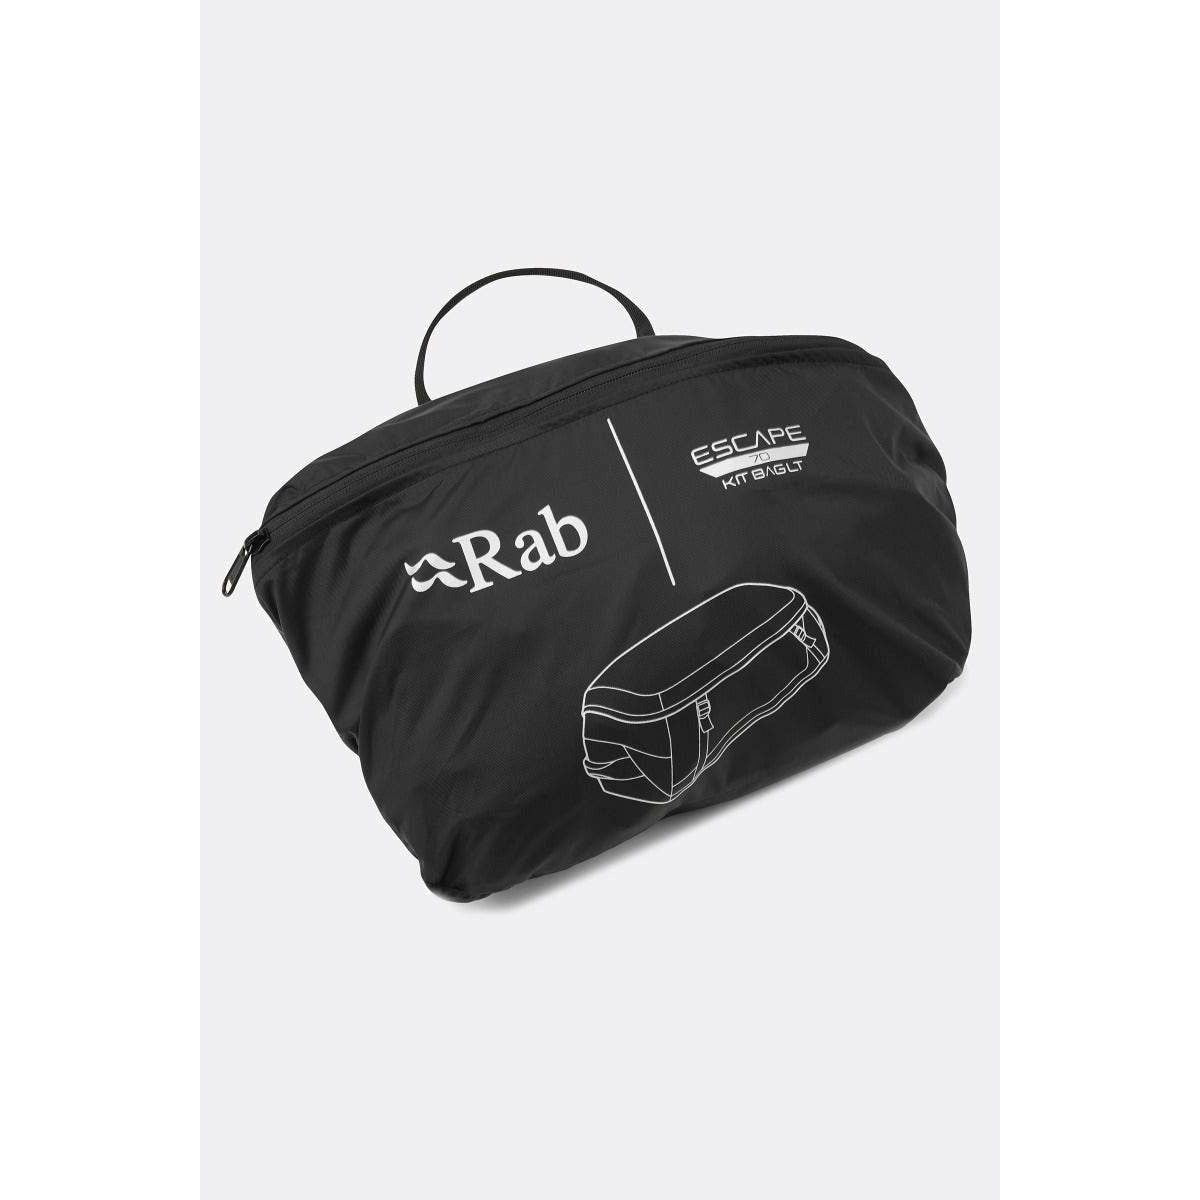 Rab Escape Kit Bag 70 Litre